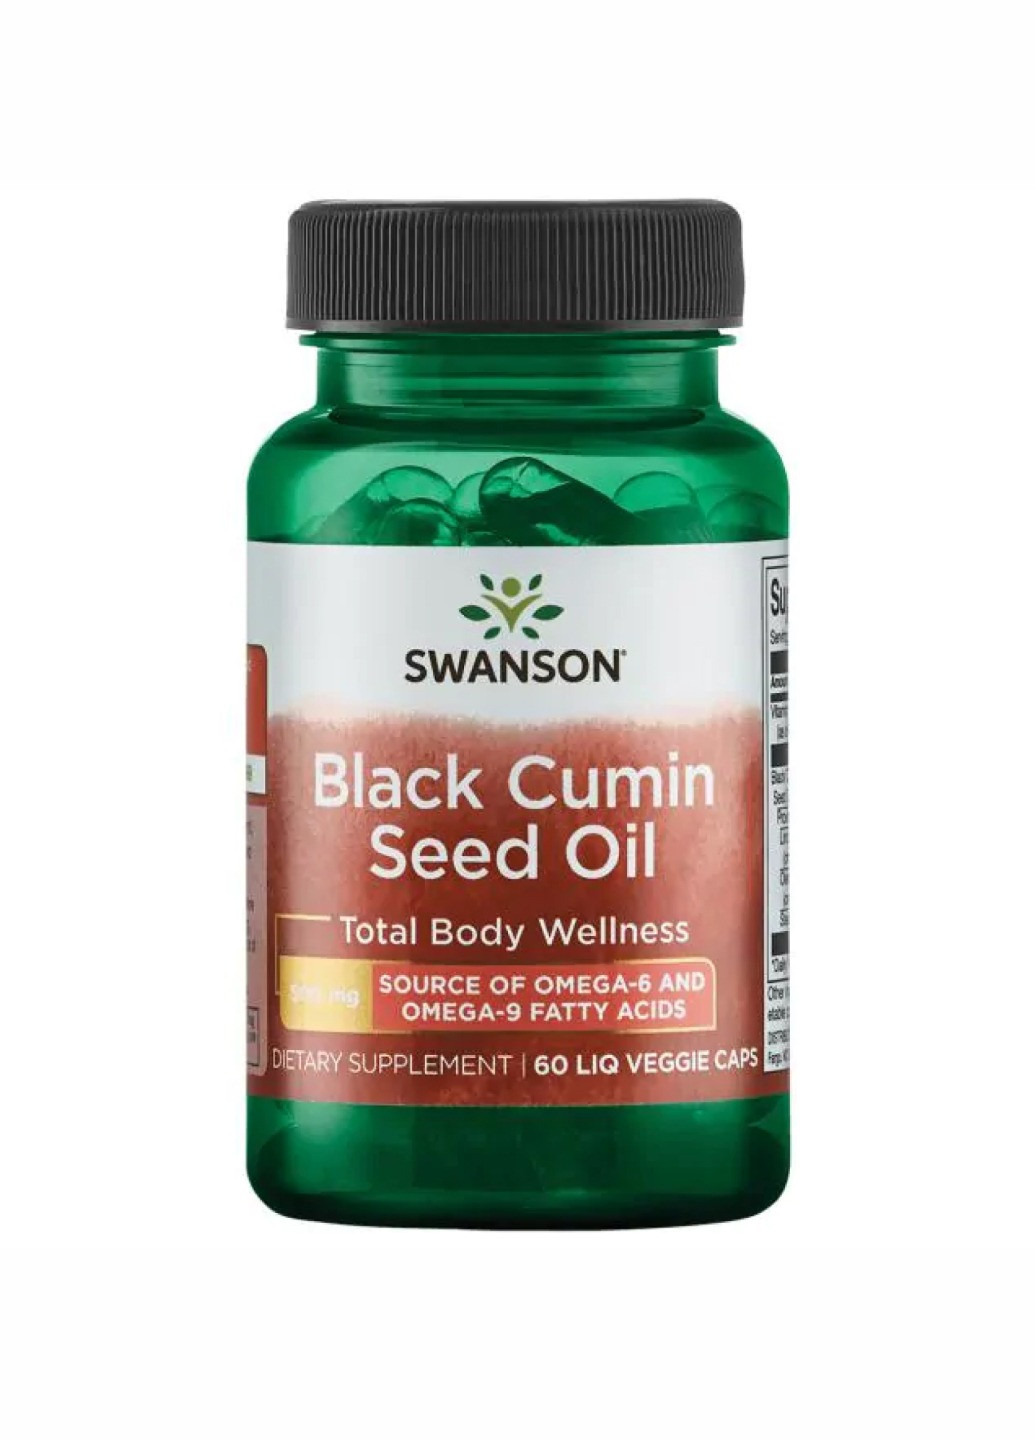 Black Cumin Seed Oil 500 mg - 60 Liq Vegcap (масло черного тмина) антиоксидант для иммунитета Swanson (260196311)